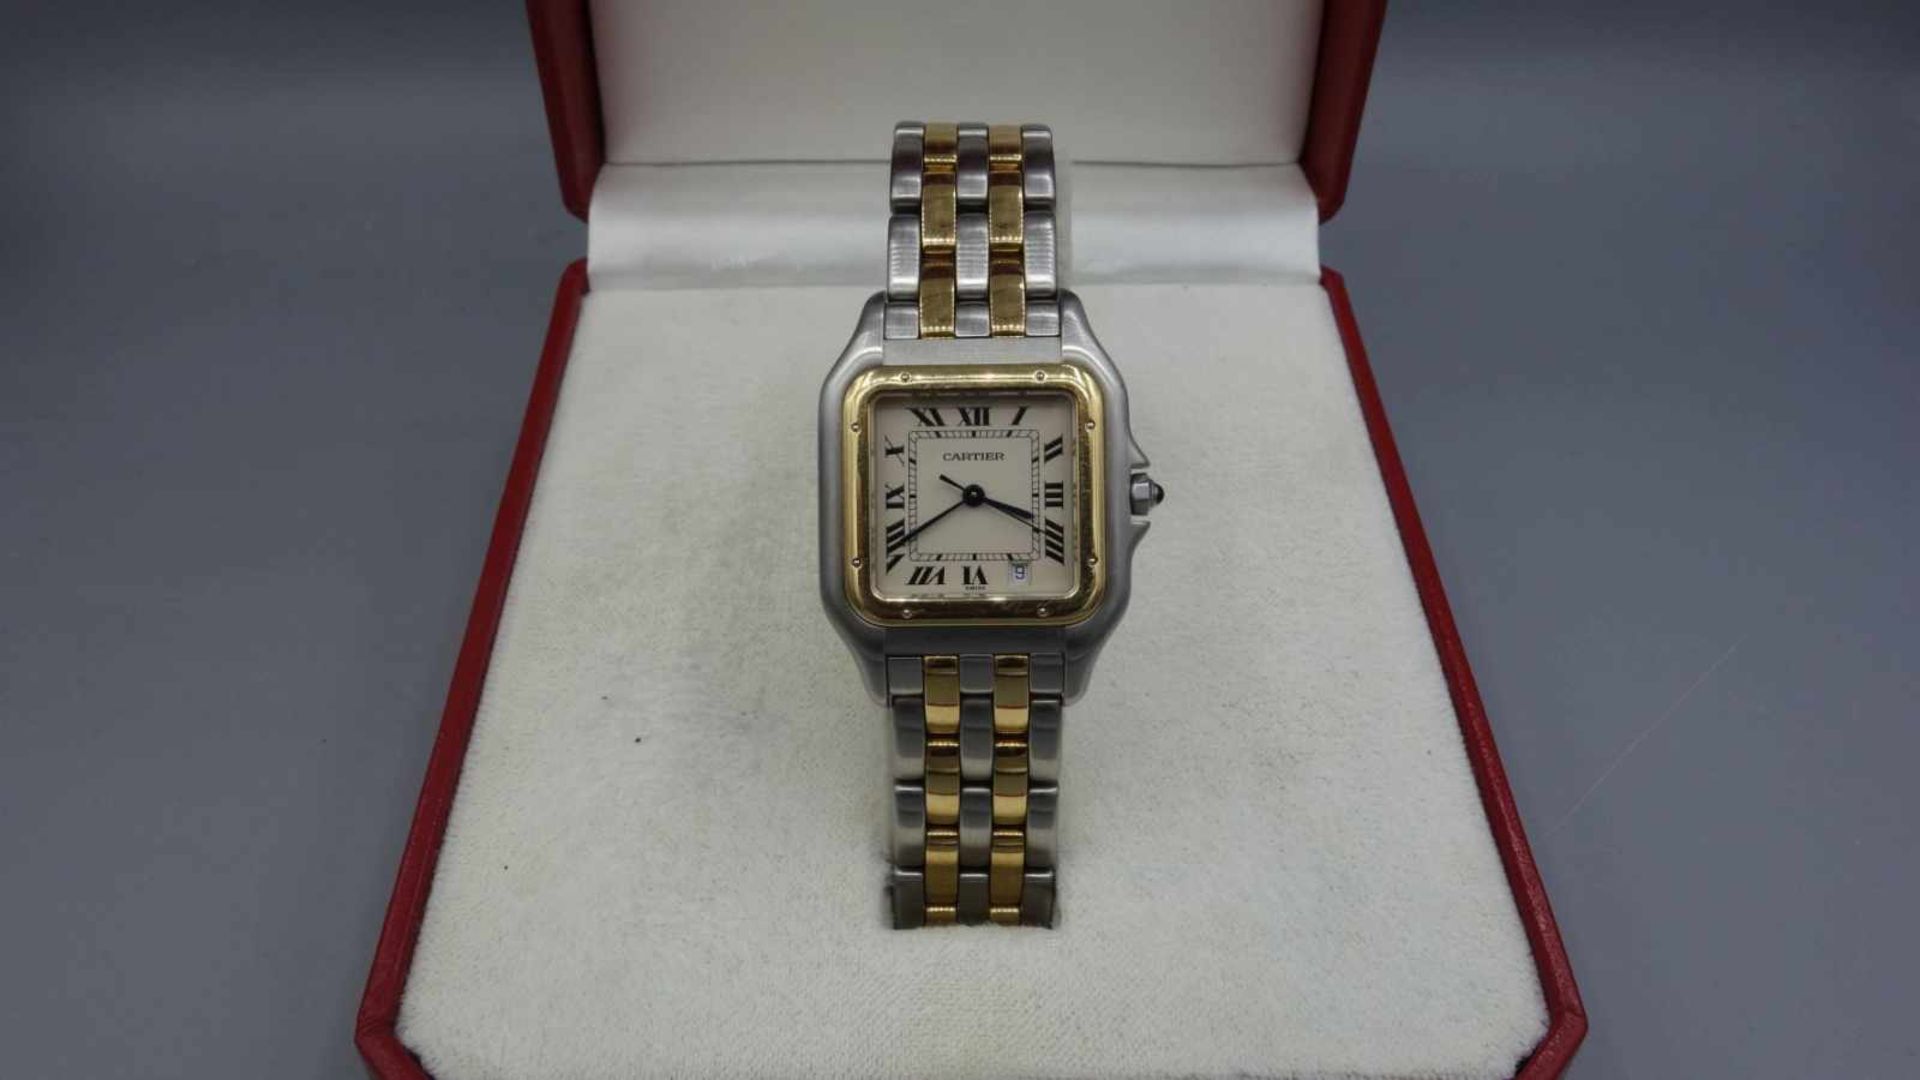 VINTAGE ARMBANDUHR - Cartier "Panthere" / wristwatch, Mitte 20. Jh., Quartz-Uhr, Manufaktur - Bild 2 aus 7